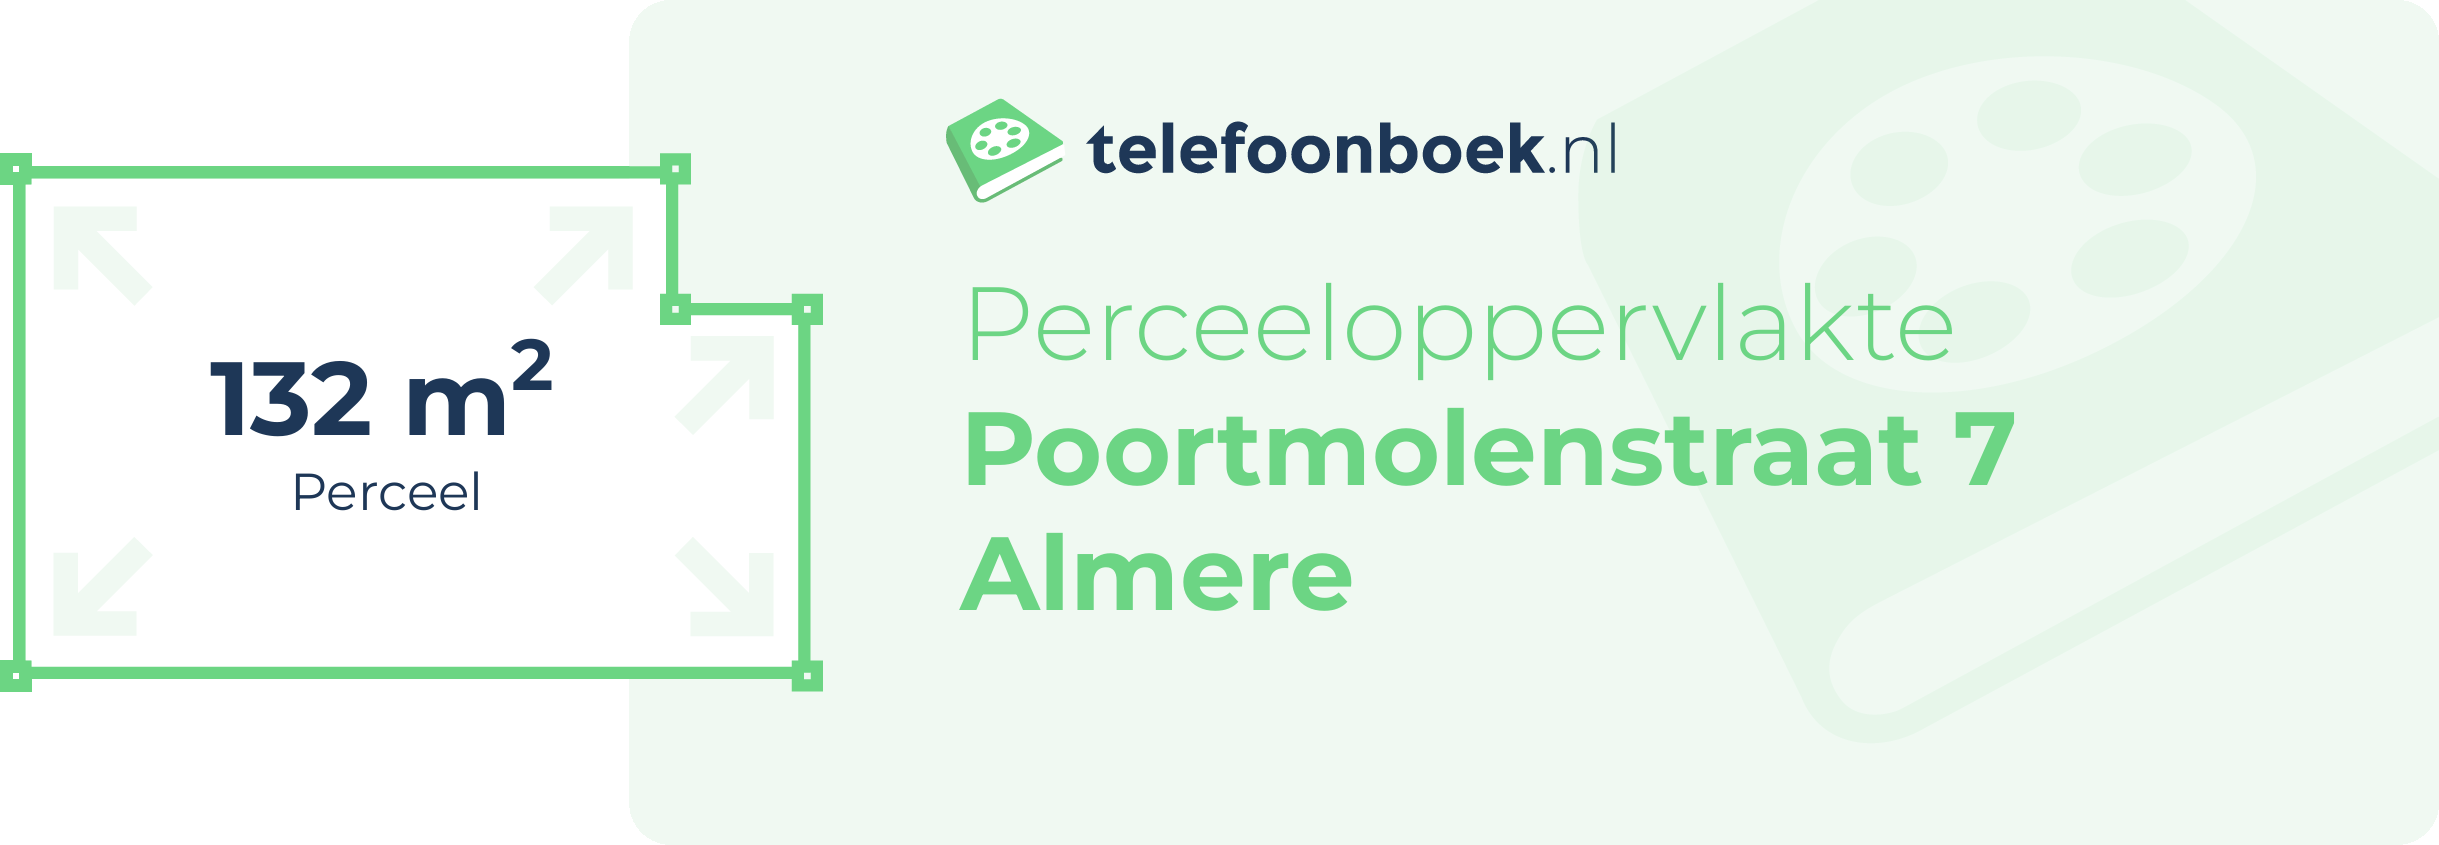 Perceeloppervlakte Poortmolenstraat 7 Almere